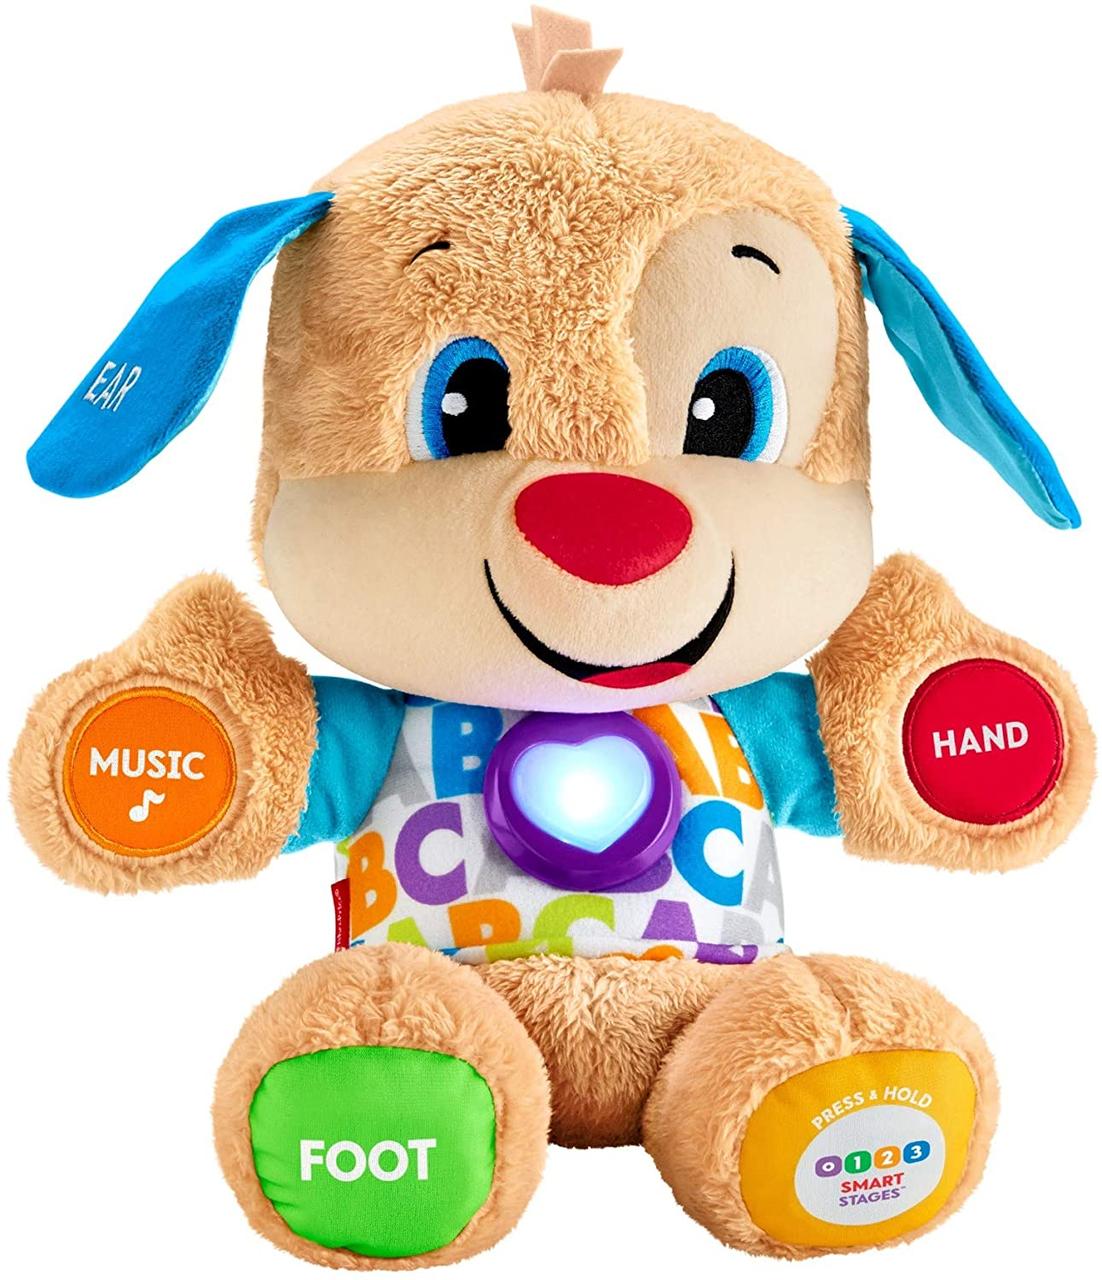 Інтерактивна іграшка Розумний цуценя Фішер Прайс Fisher-Price Laugh & Learn Smart Stages Puppy FDF21